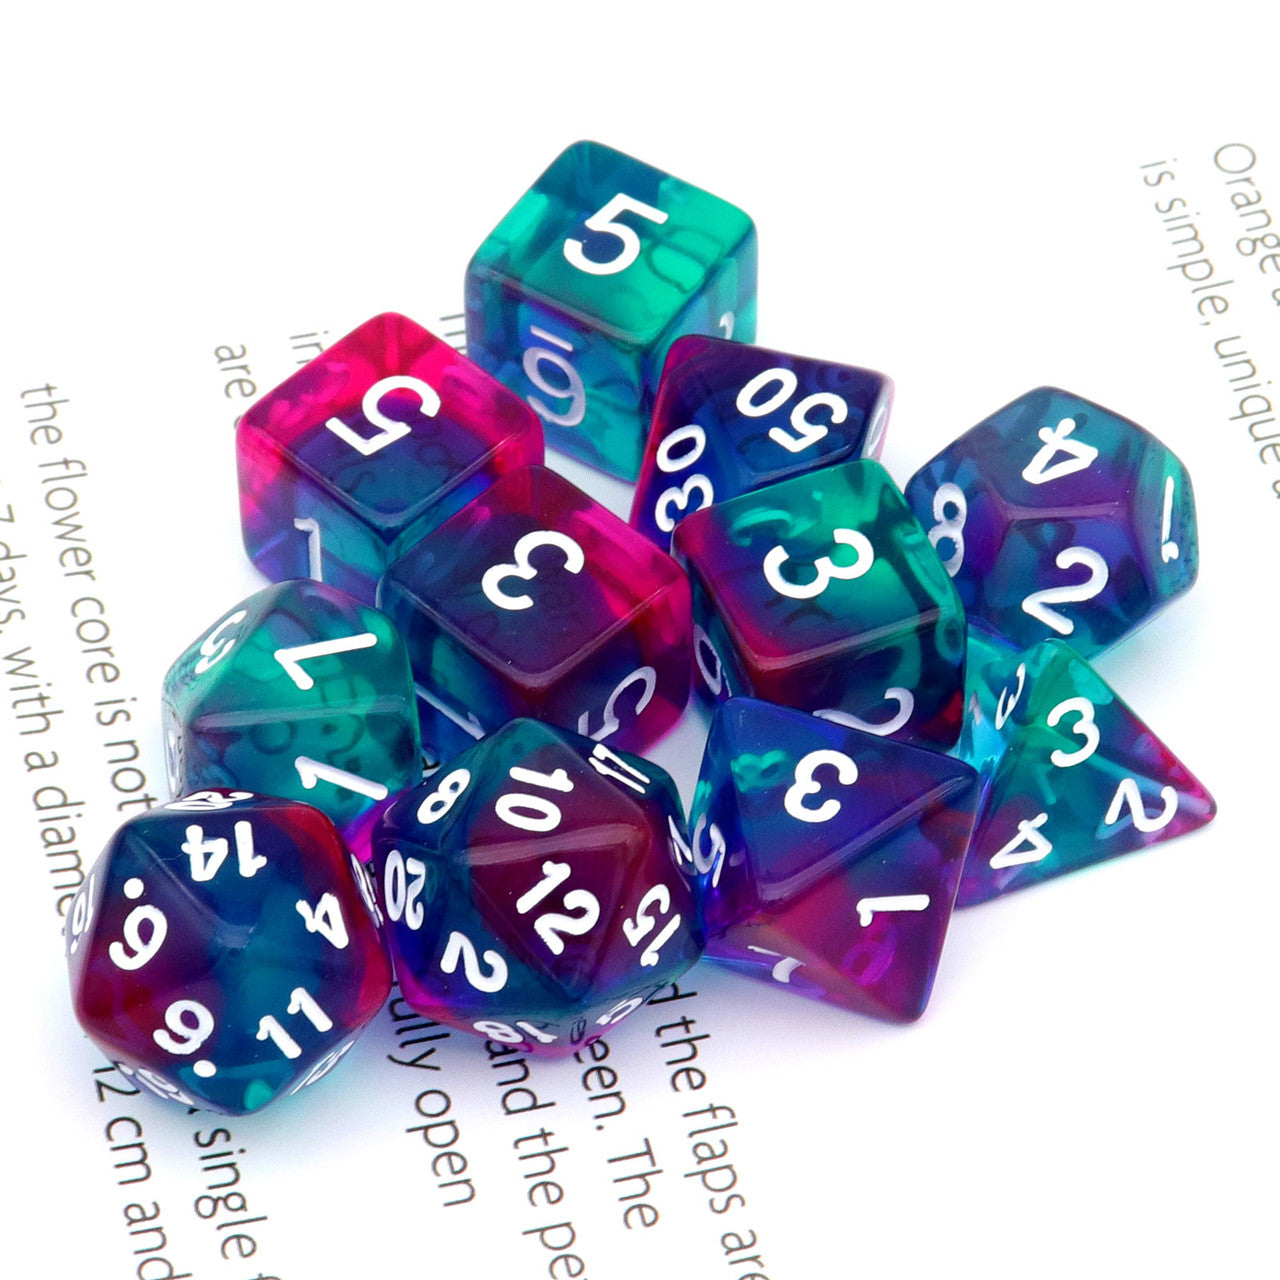 dnd dice,acrylic dice,rpg dice,purple dice,dnd dice set